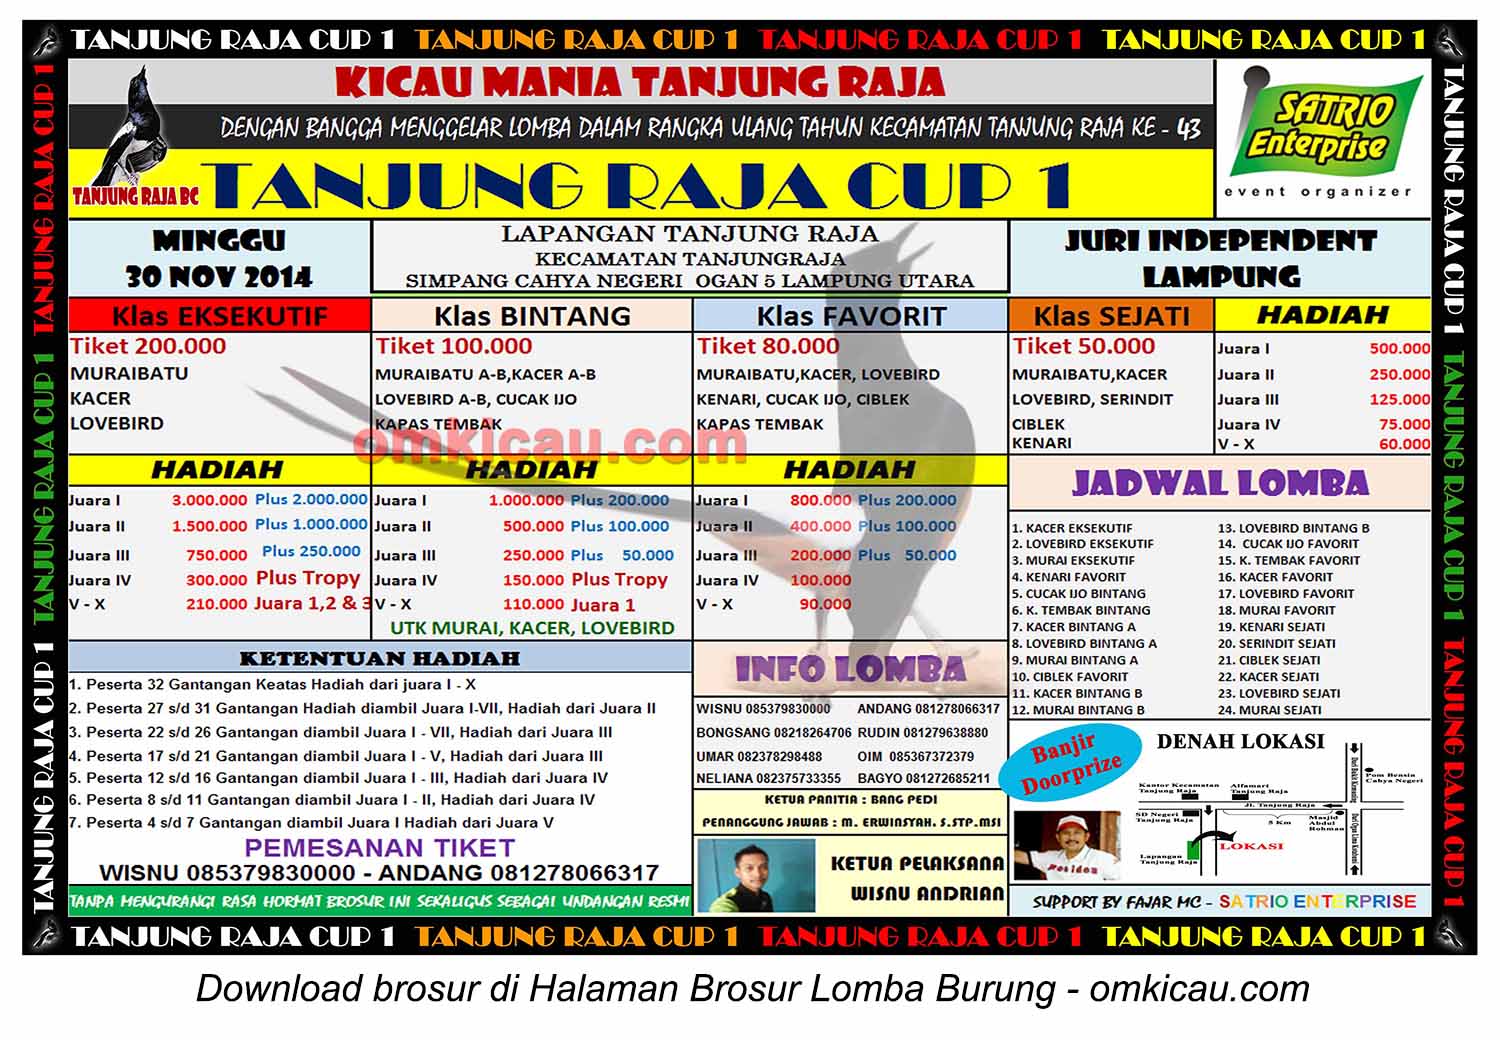 Brosur Lomba Burung Berkicau Tanjung Raja Cup 1, Lampung Utara, 30 November 2014